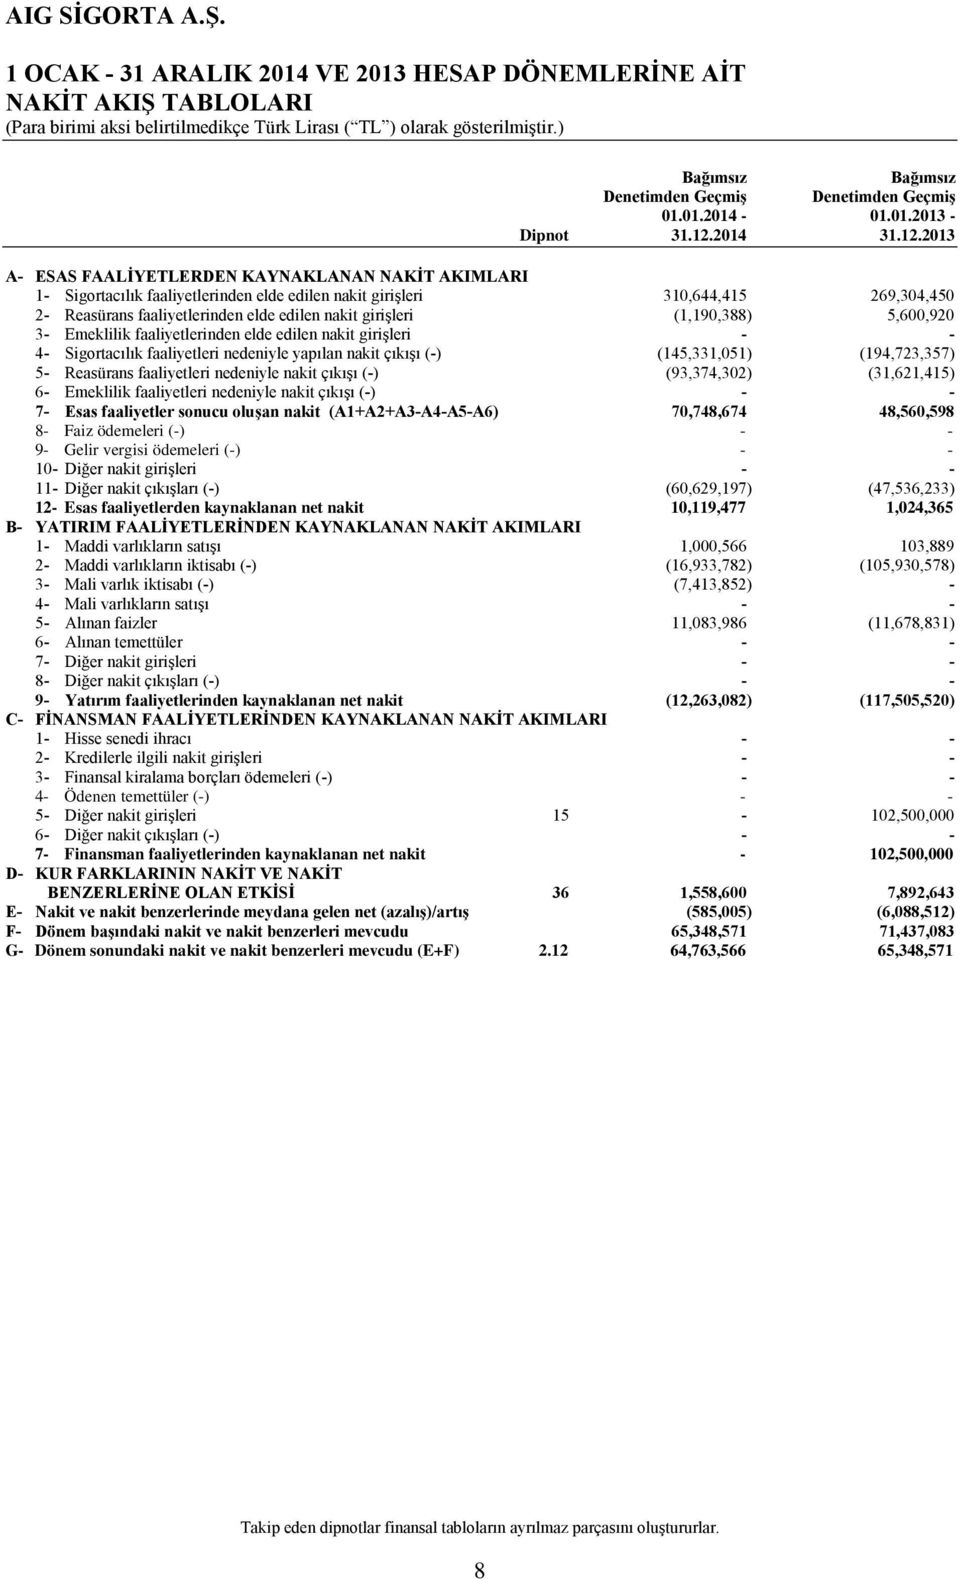 2013 A- ESAS FAALİYETLERDEN KAYNAKLANAN NAKİT AKIMLARI 1- Sigortacılık faaliyetlerinden elde edilen nakit girişleri 310,644,415 269,304,450 2- Reasürans faaliyetlerinden elde edilen nakit girişleri